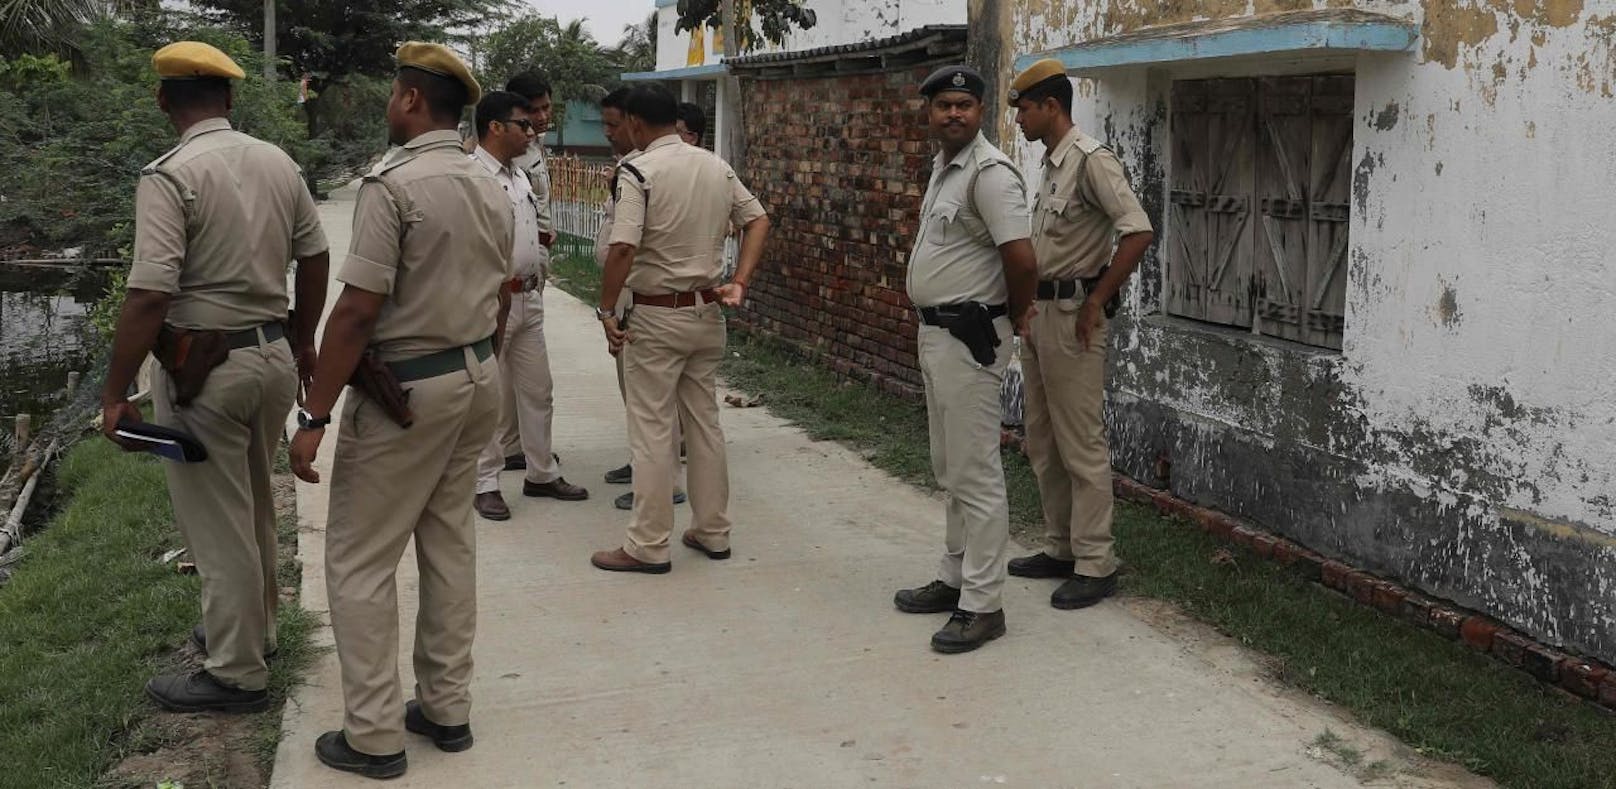 Drei Männer wurden verhaftet, wie die Polizei in Jharkhand mitteilte (Symbolbild).